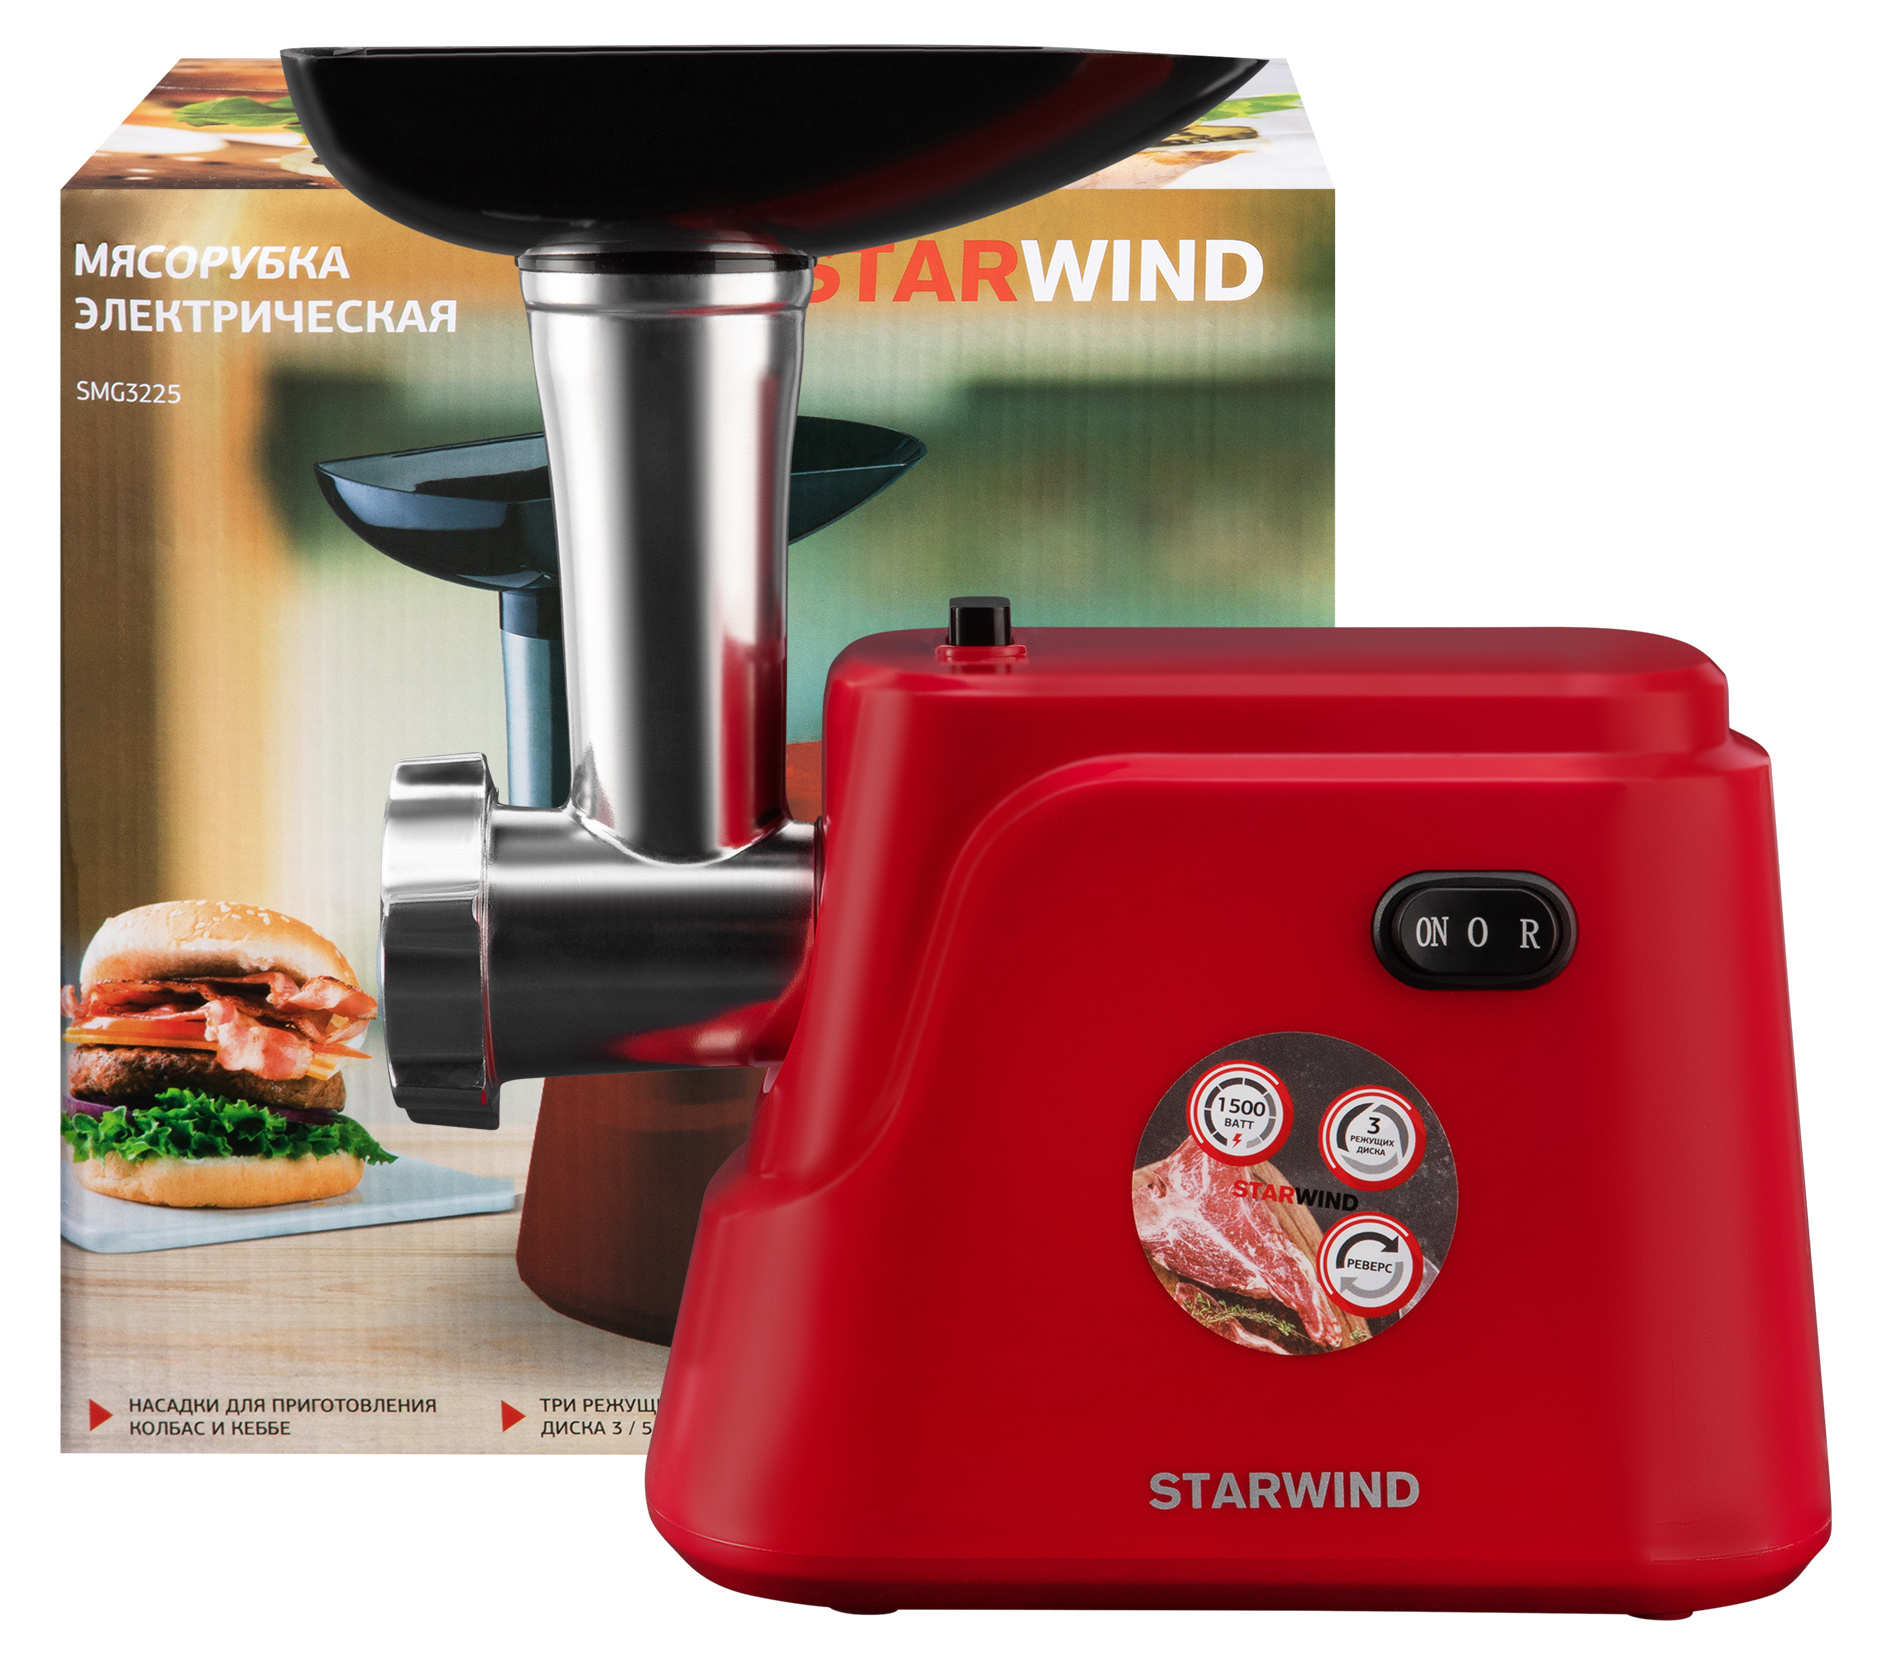 Мясорубка Starwind SMG3225 красный от магазина Старвинд